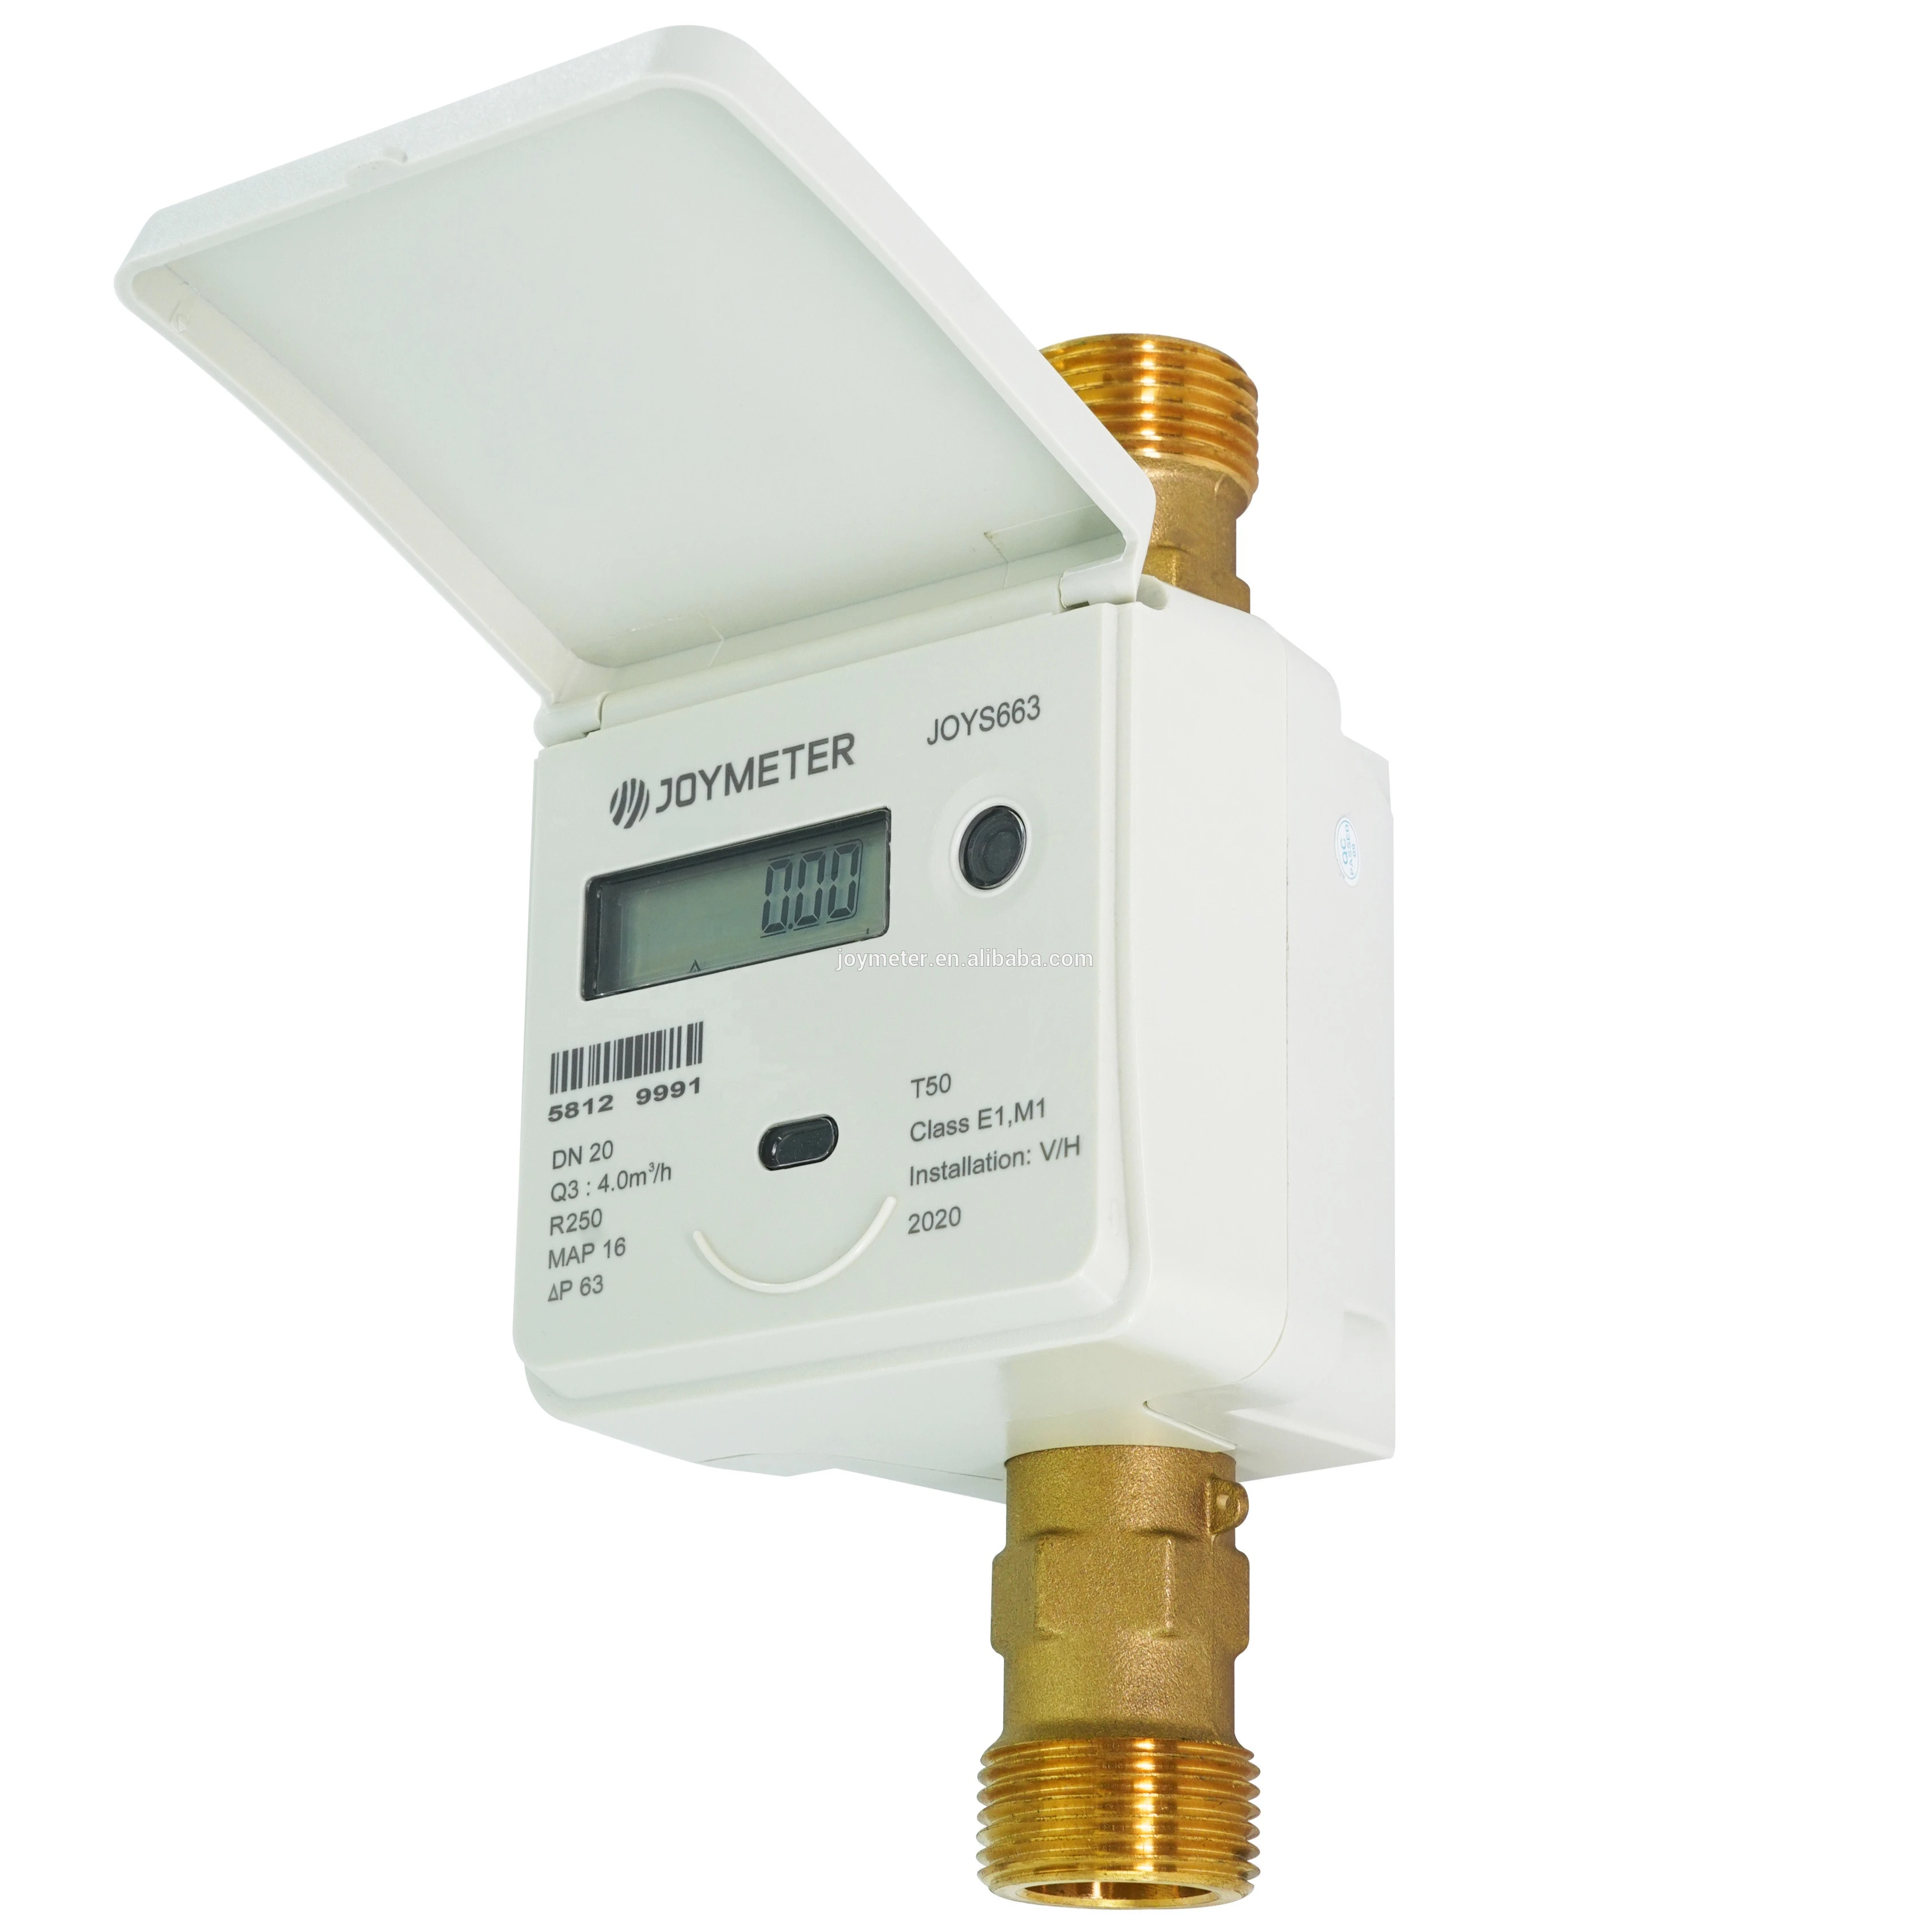 High quality digital water meter ultrasonic water meter